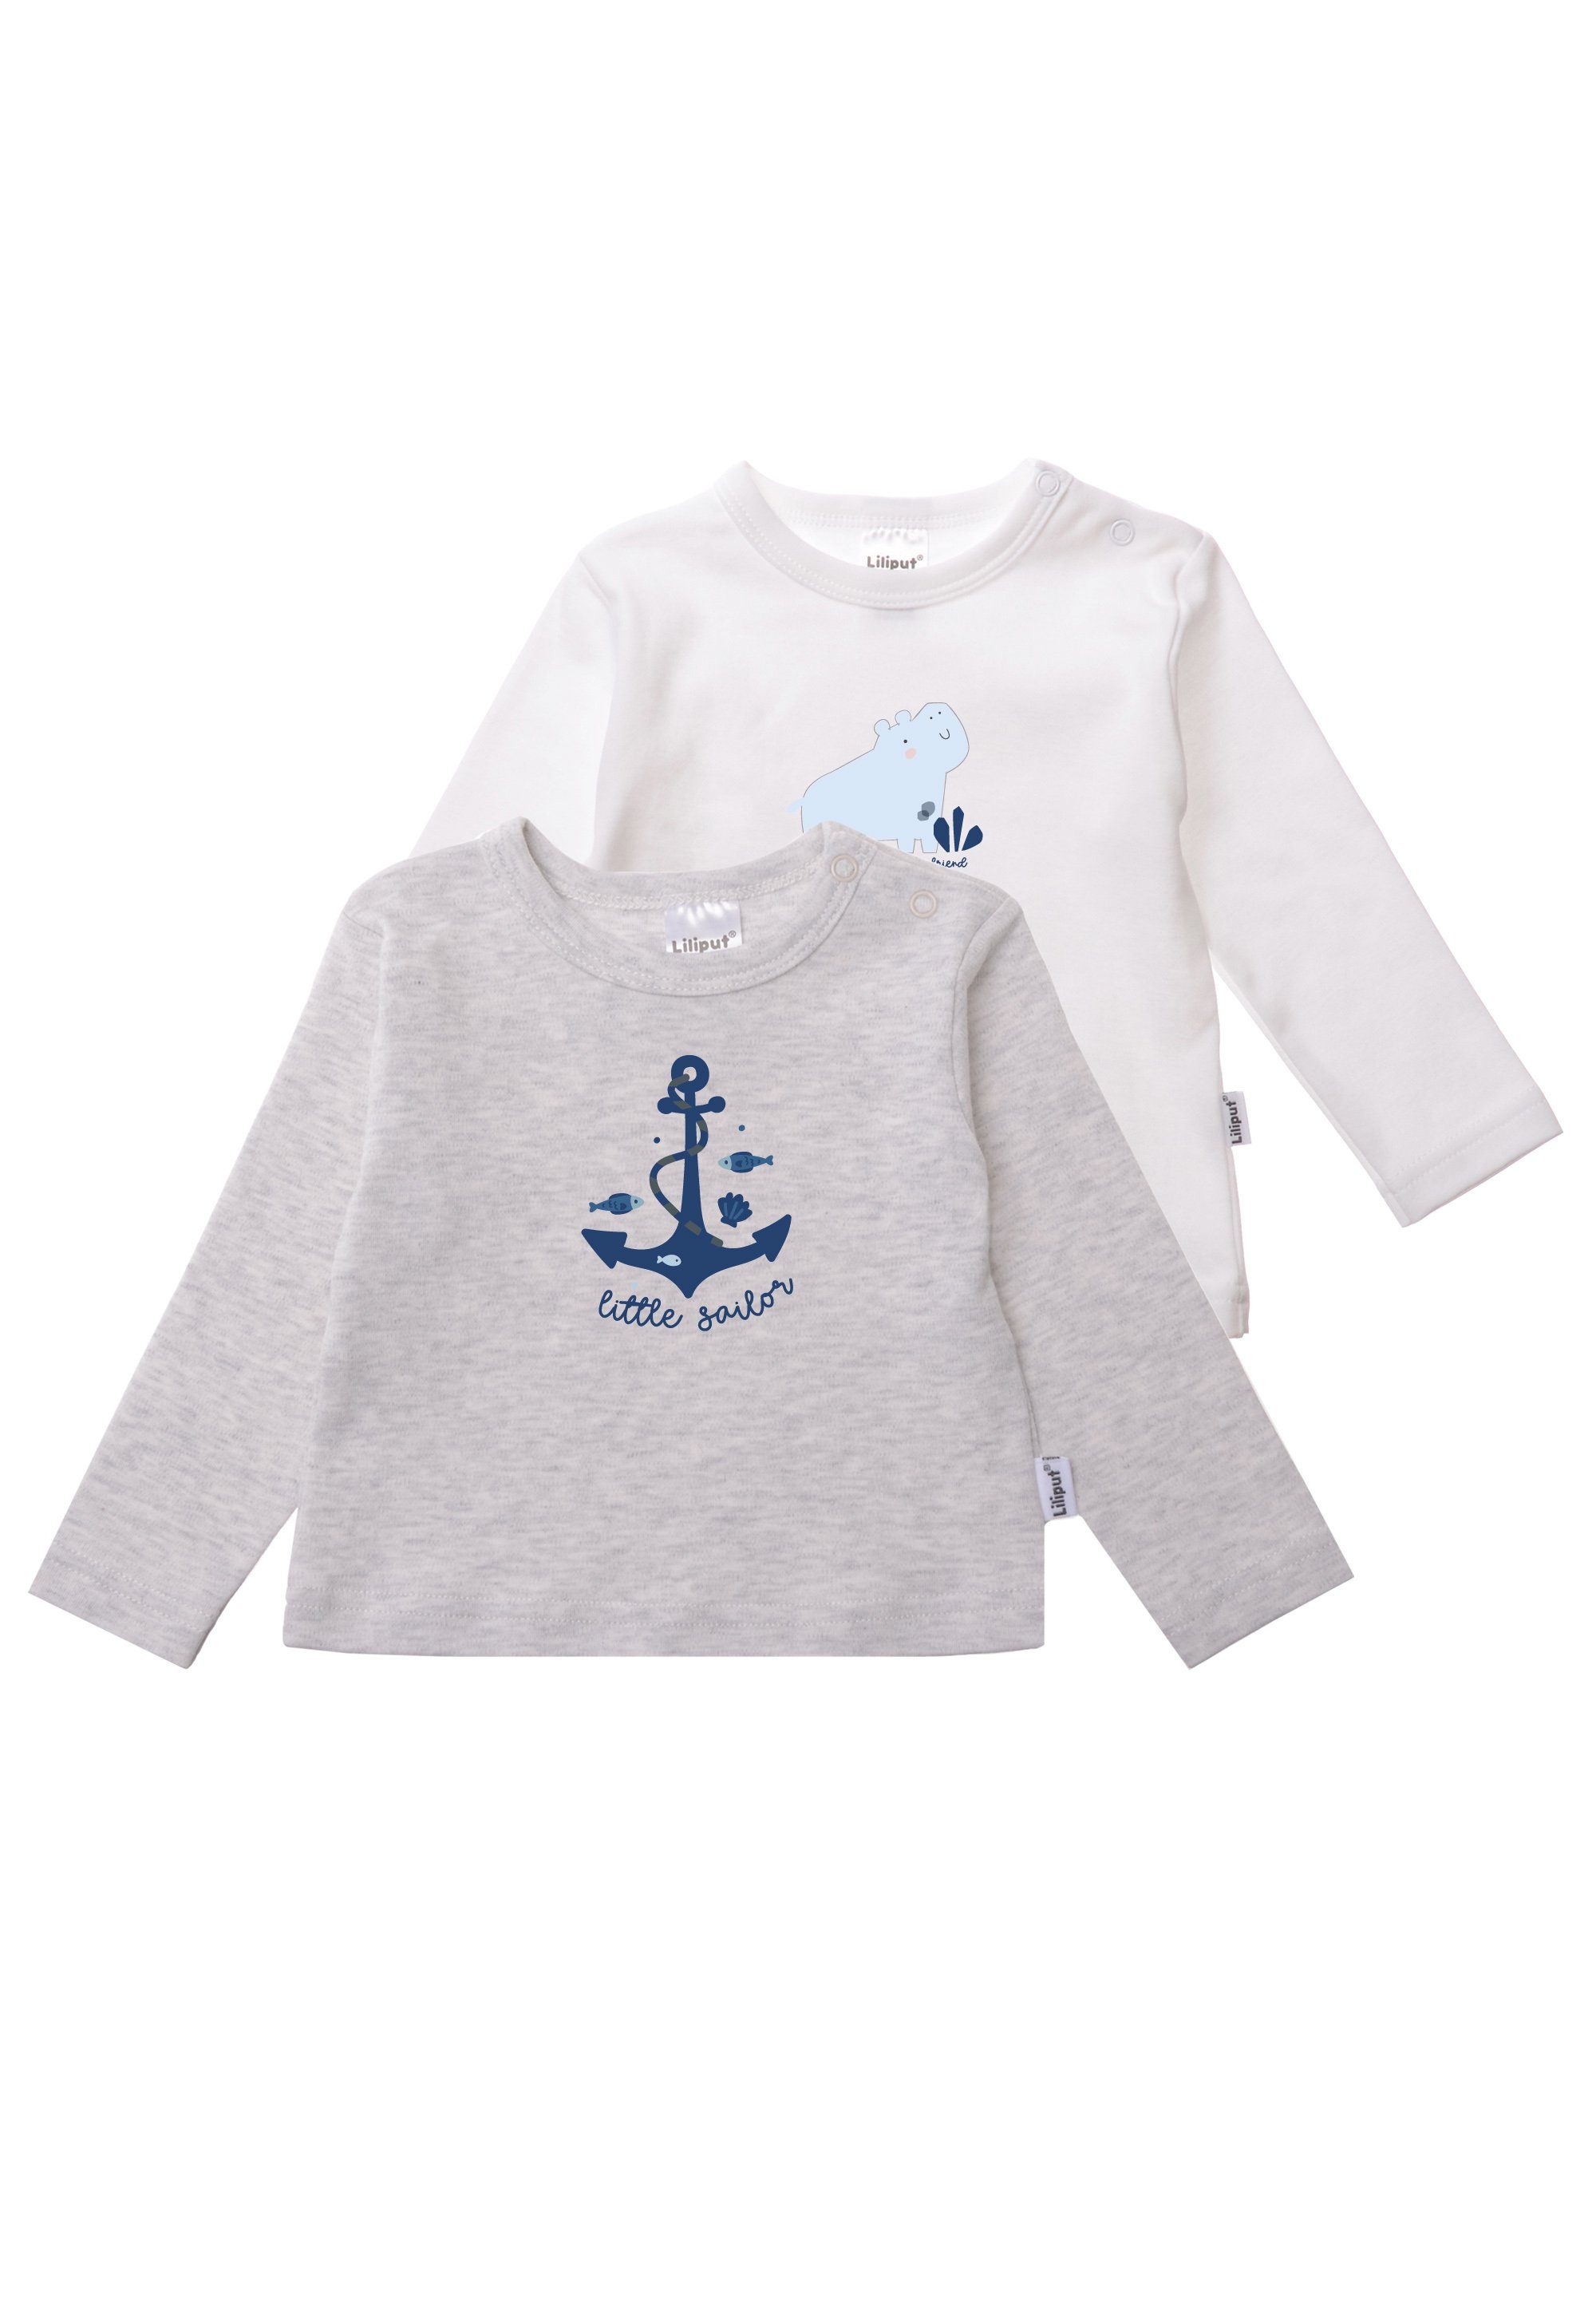 Liliput T-Shirt Sailor Baumwoll-Material 2er-Pack weichem Little aus